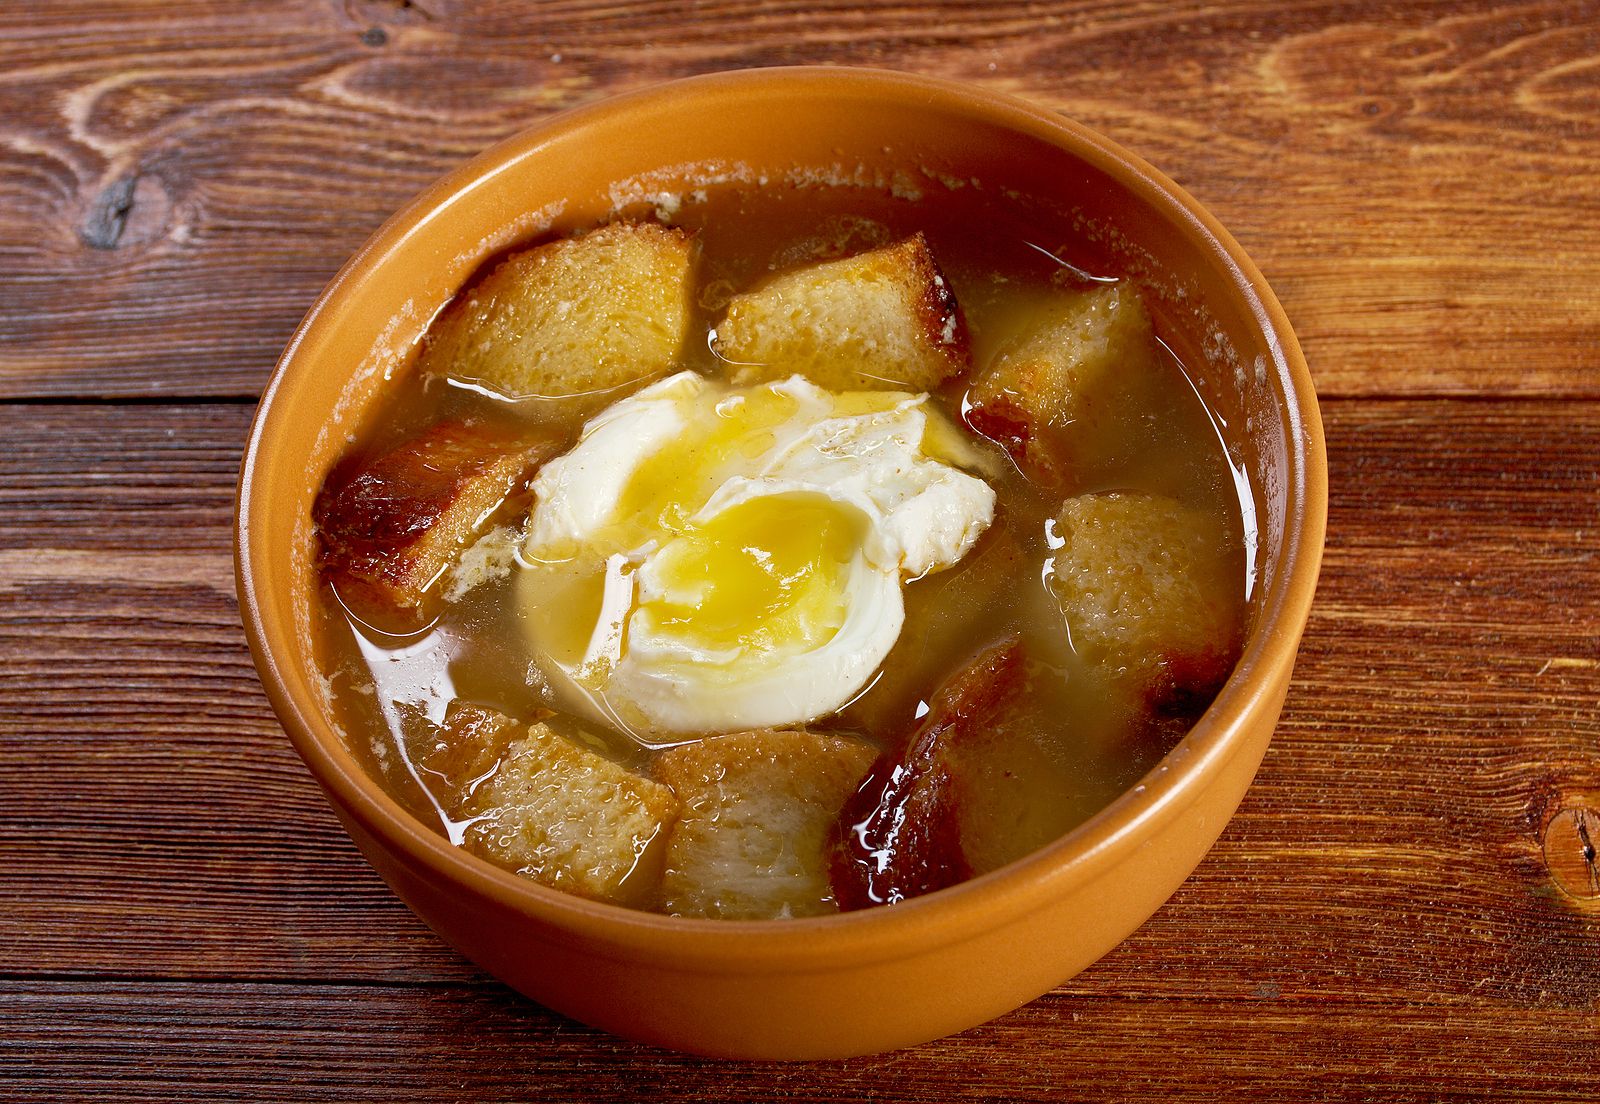 Receta de sopa castellana y la versión gourmet de una sopa de ajo blanco de Chinchón en cafetera. Foto: bigstock